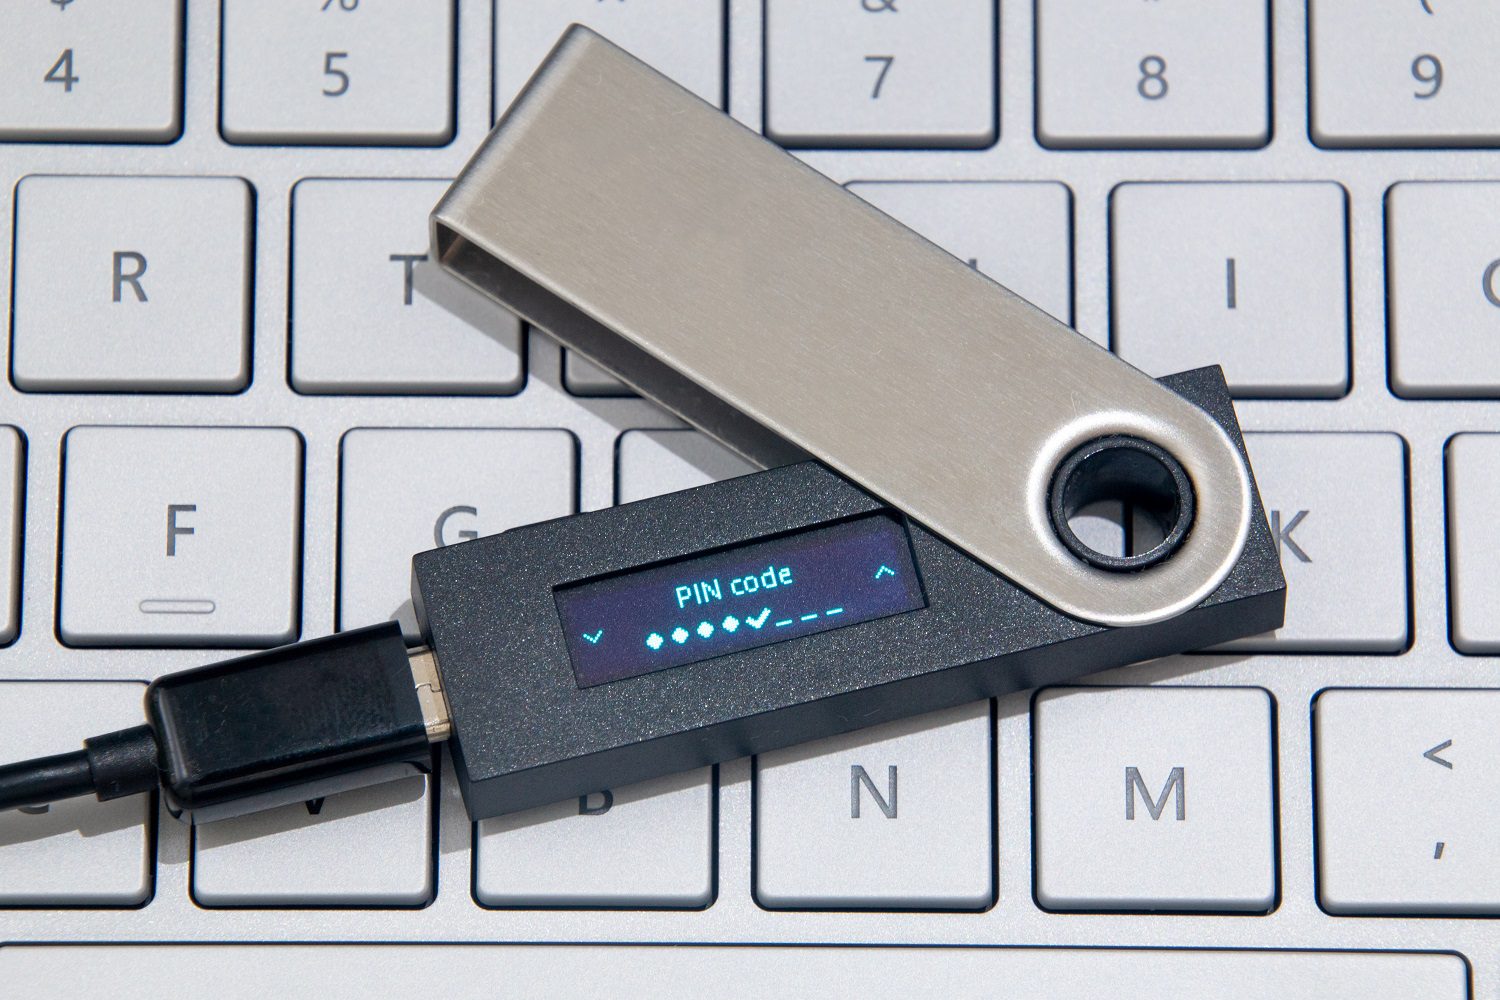 Una billetera de hardware criptográfico, conectada a un cable a través de una toma USB, descansa sobre el teclado de una computadora portátil.